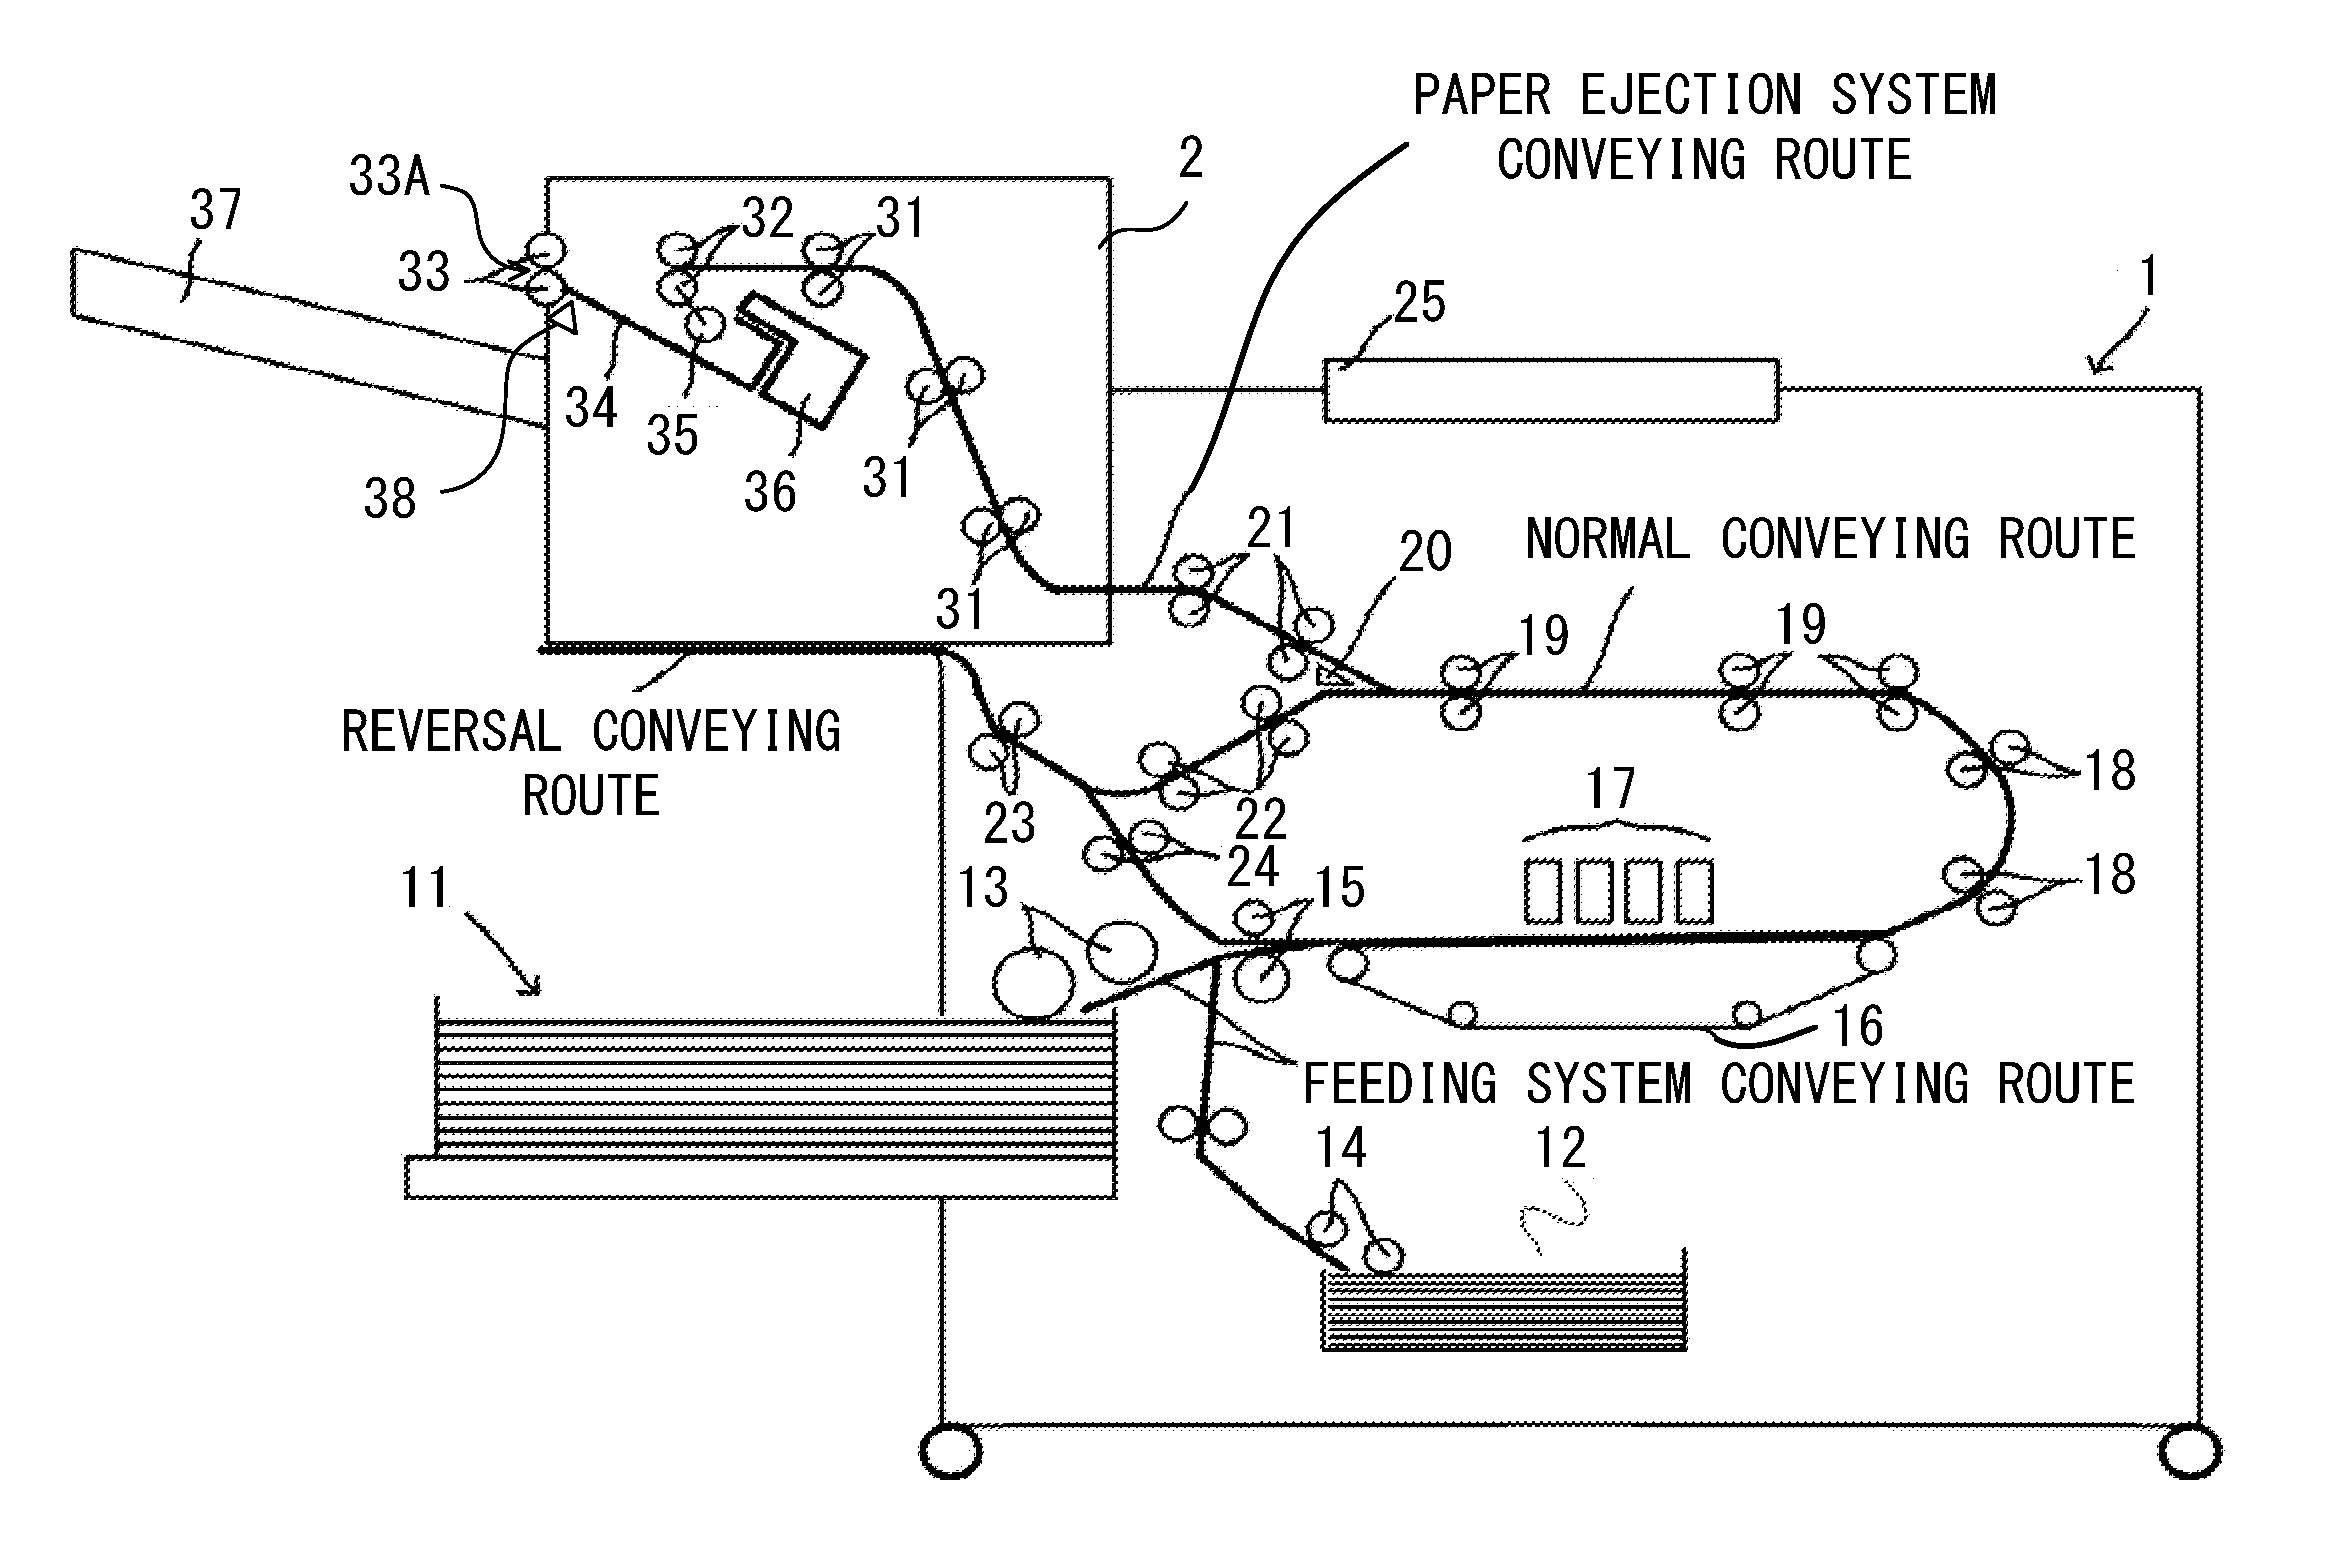 Conveyance control  apparatus